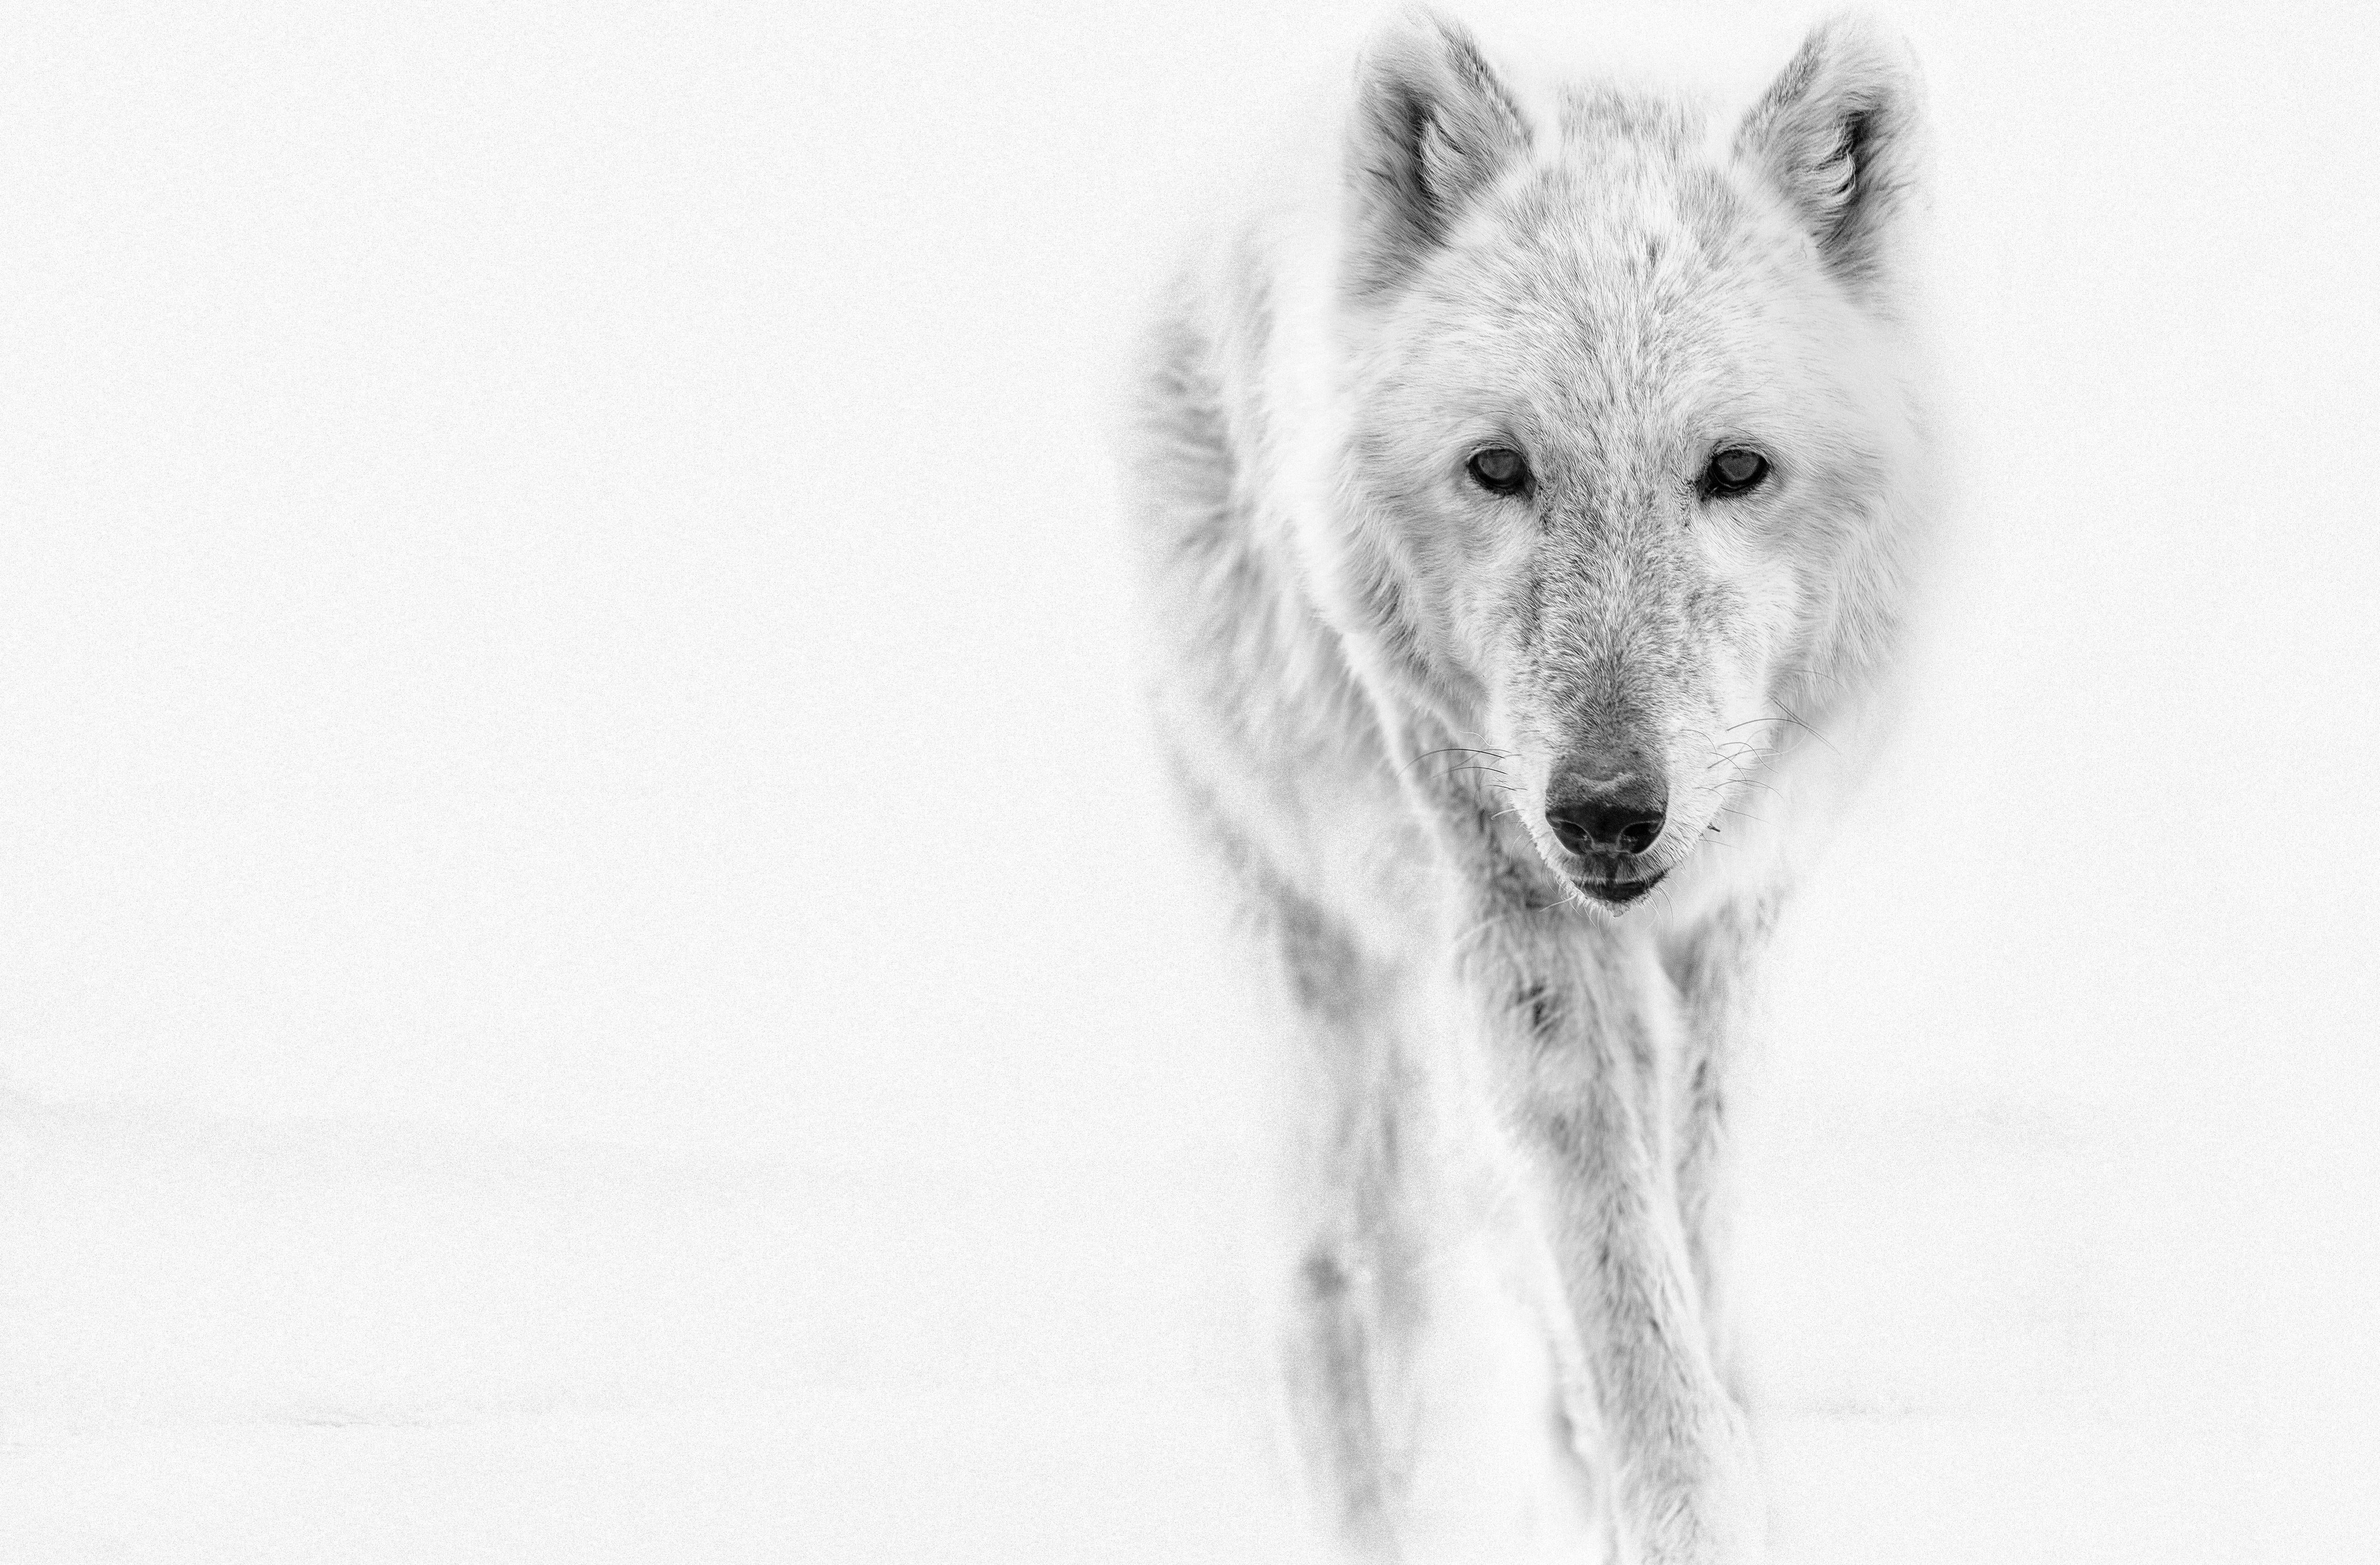 Il s'agit d'une photographie contemporaine en noir et blanc d'un loup arctique.
Imprimé sur du papier d'archives en utilisant uniquement de l'encre d'archives. 
Encadrement disponible. Renseignez-vous sur les tarifs. 
Édition signée de 12